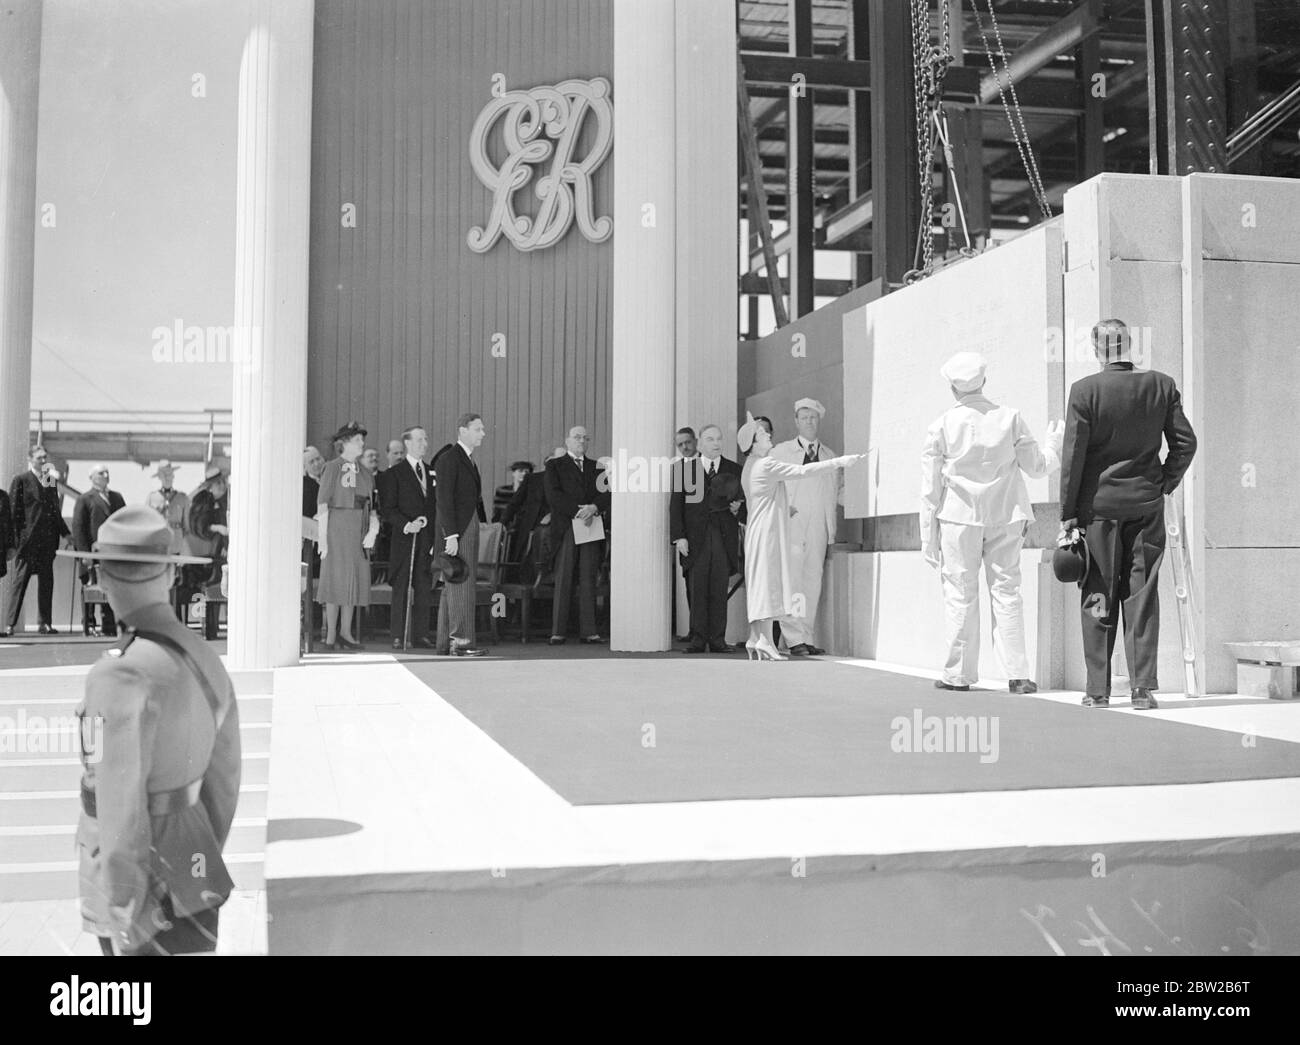 Die Königin legte einen Eckstein des Obersten Gerichtsgebäudes, Ottawa, und danach baten König und Königin, dass die Maurer, die für die Richtung des Ecksteins zuständig waren, vorgestellt werden sollten, und sprachen mit ihnen mehrere Minuten. Der König und der kanadische Premierminister Mackenzie King beobachten die Königin beim Grundsteinlegung. 30 Mai 1939 Stockfoto